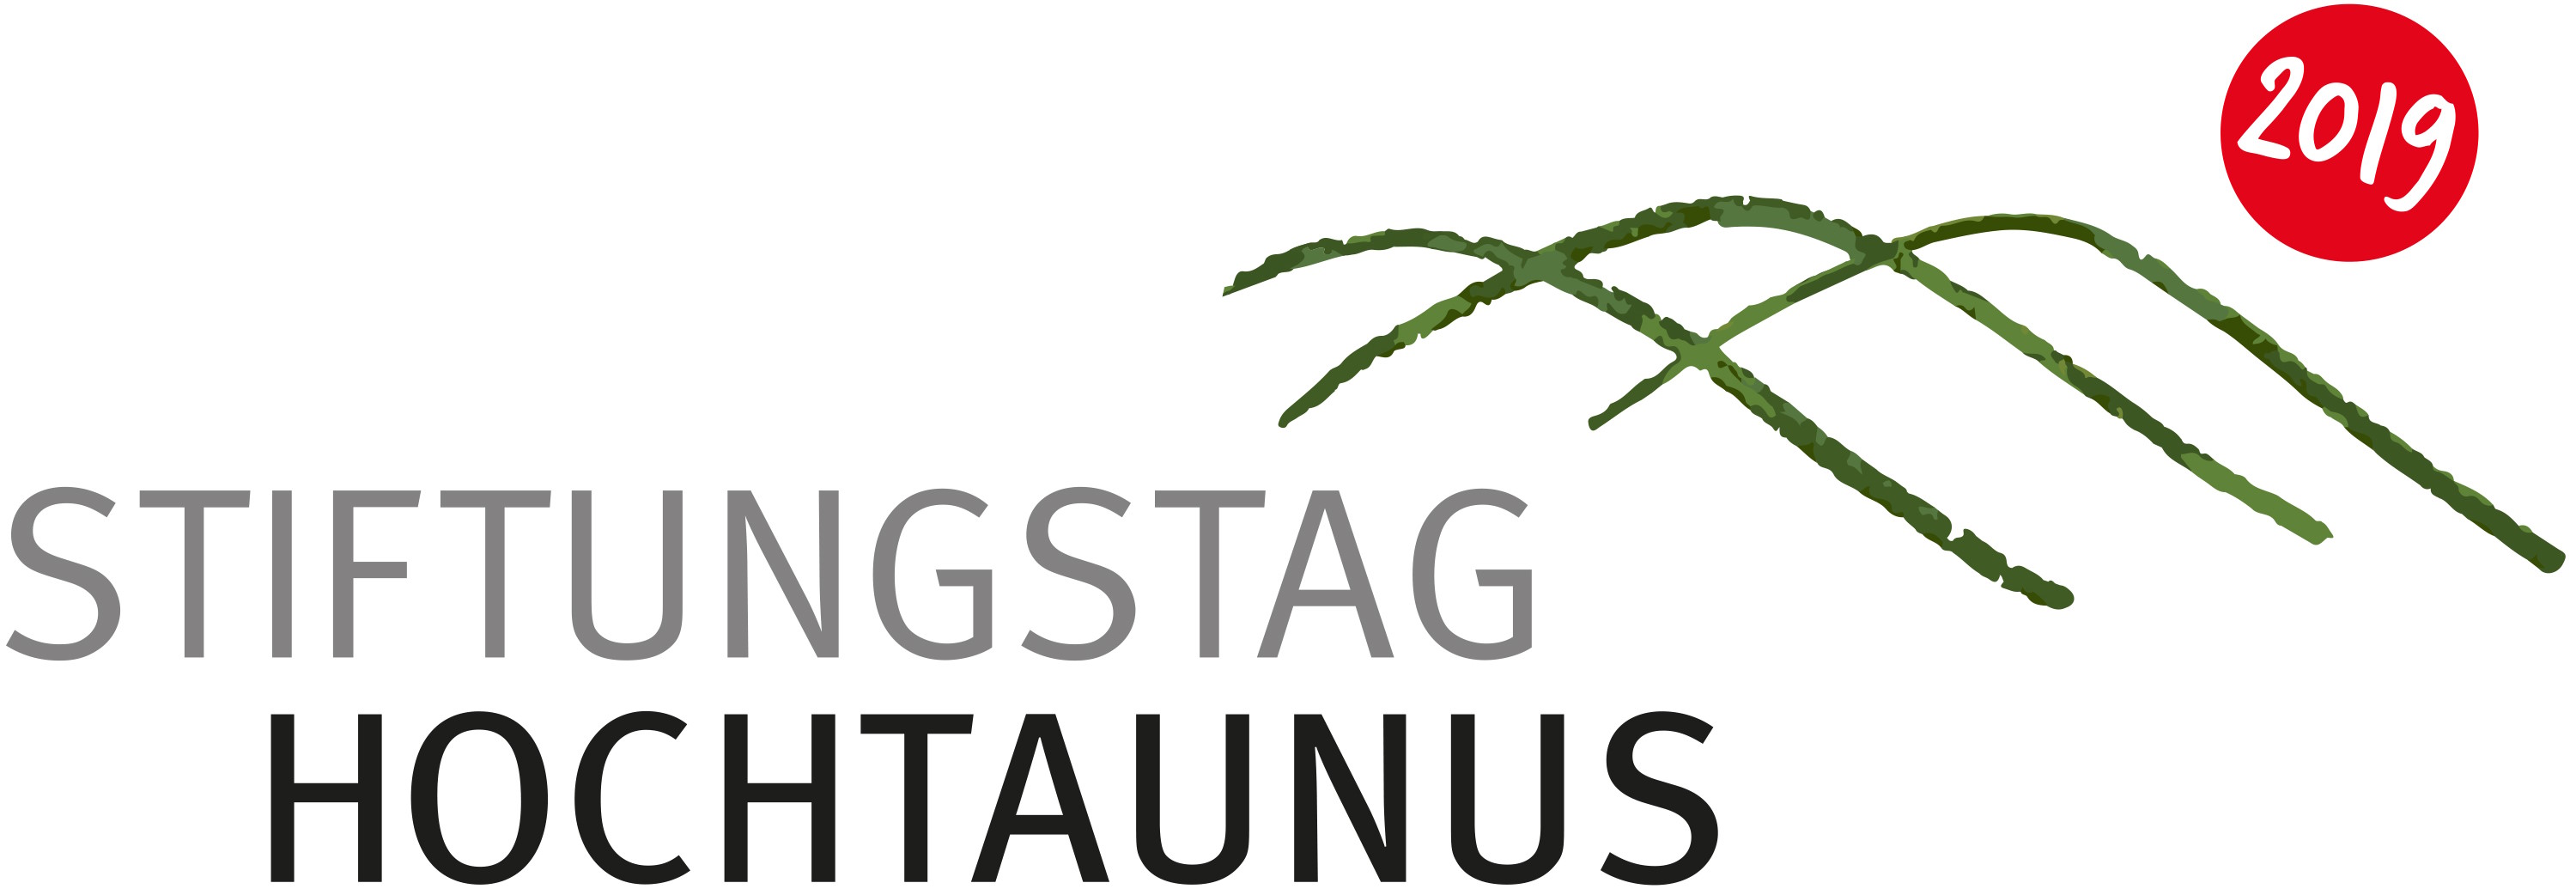 reeberdesign | Stiftungstag Hochtaunus - Logo